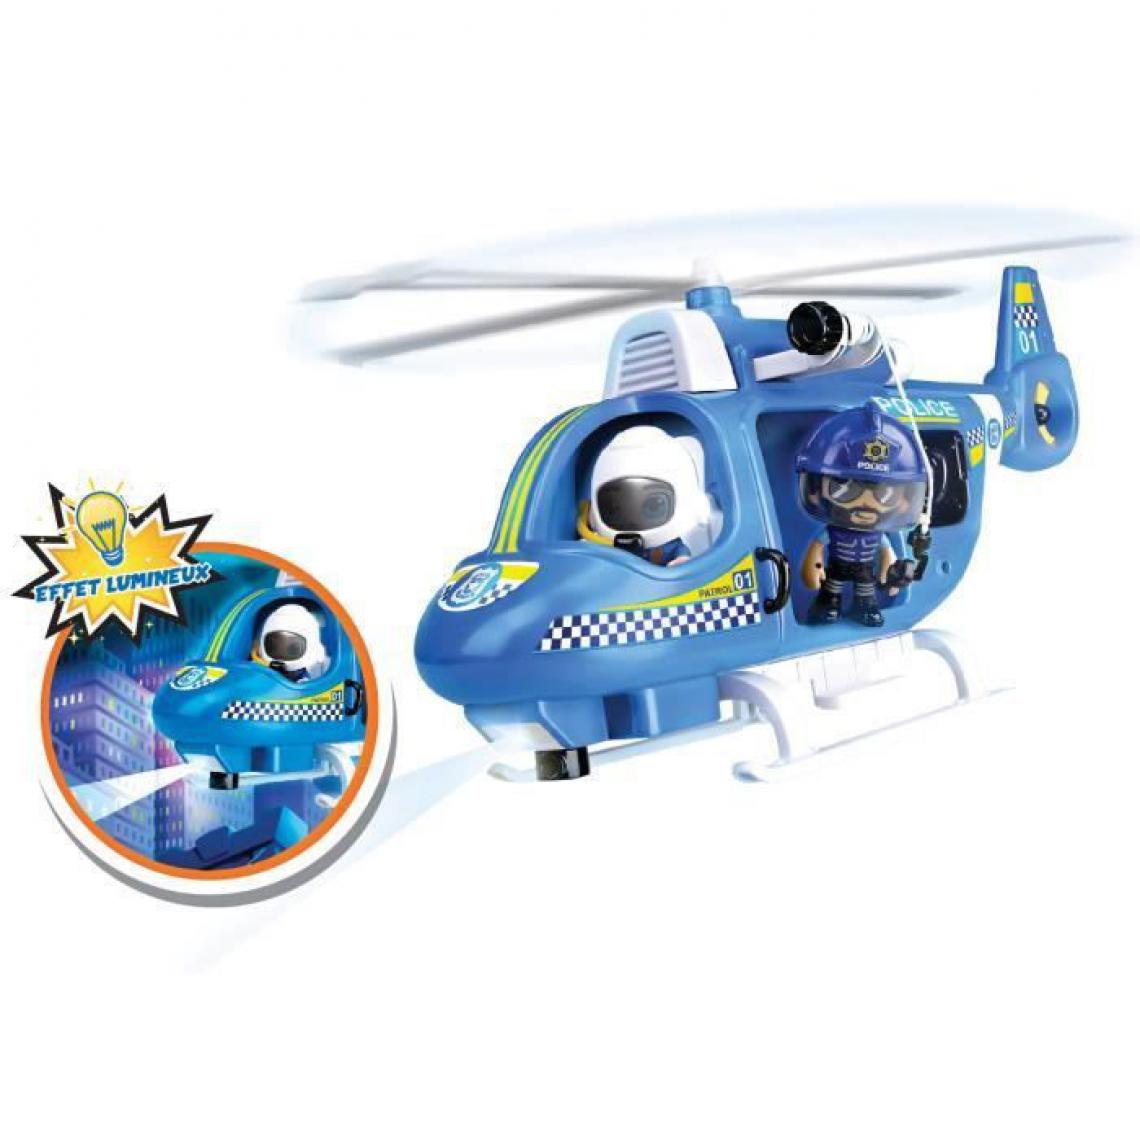 Splash Toys - Pinypon Action - L'hélicoptere de police - 1 figurine incluse - Films et séries